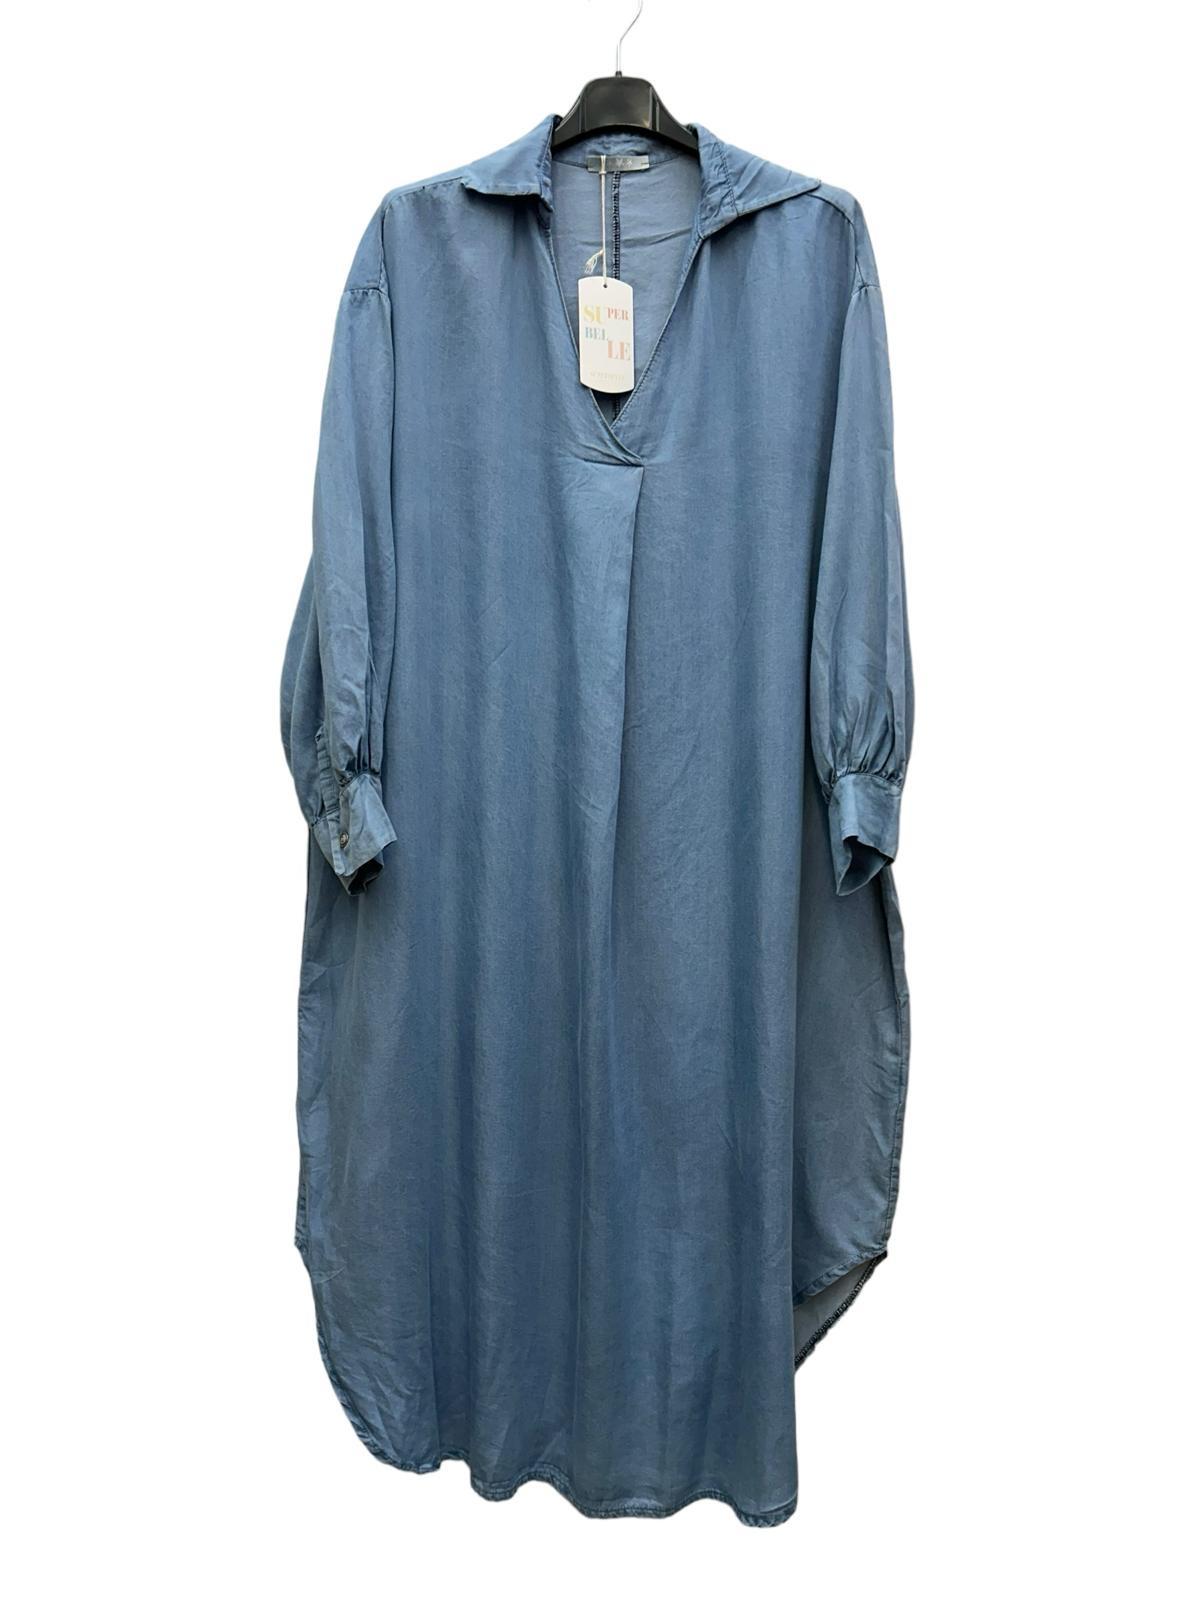 Robes mi-longues Femme Bleu clair SUPER BELLE 072124 #c Efashion Paris